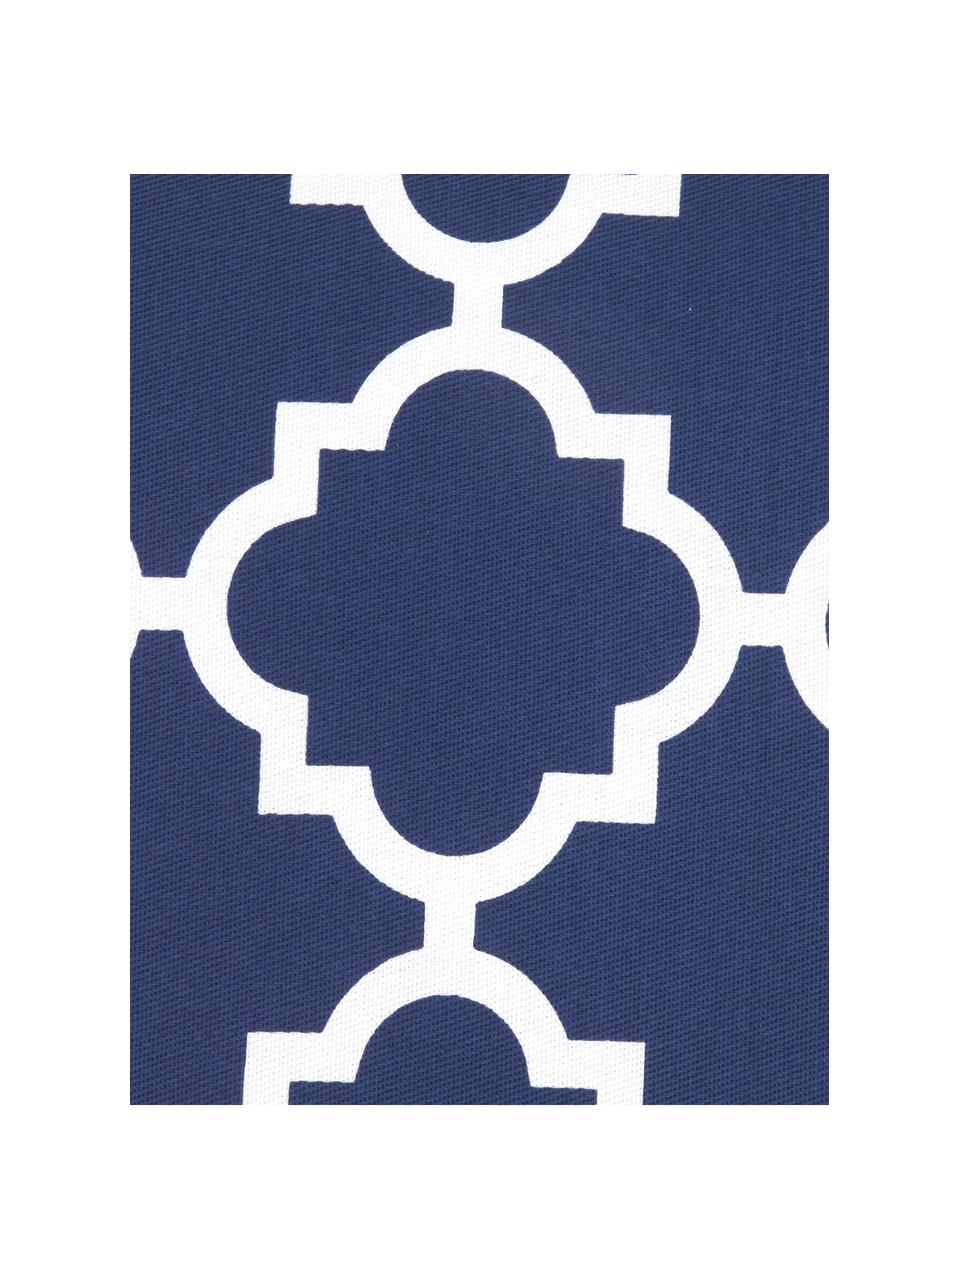 Kussenhoes Lana in marineblauw met grafisch patroon, 100% katoen, Marineblauw, wit, B 45 x L 45 cm